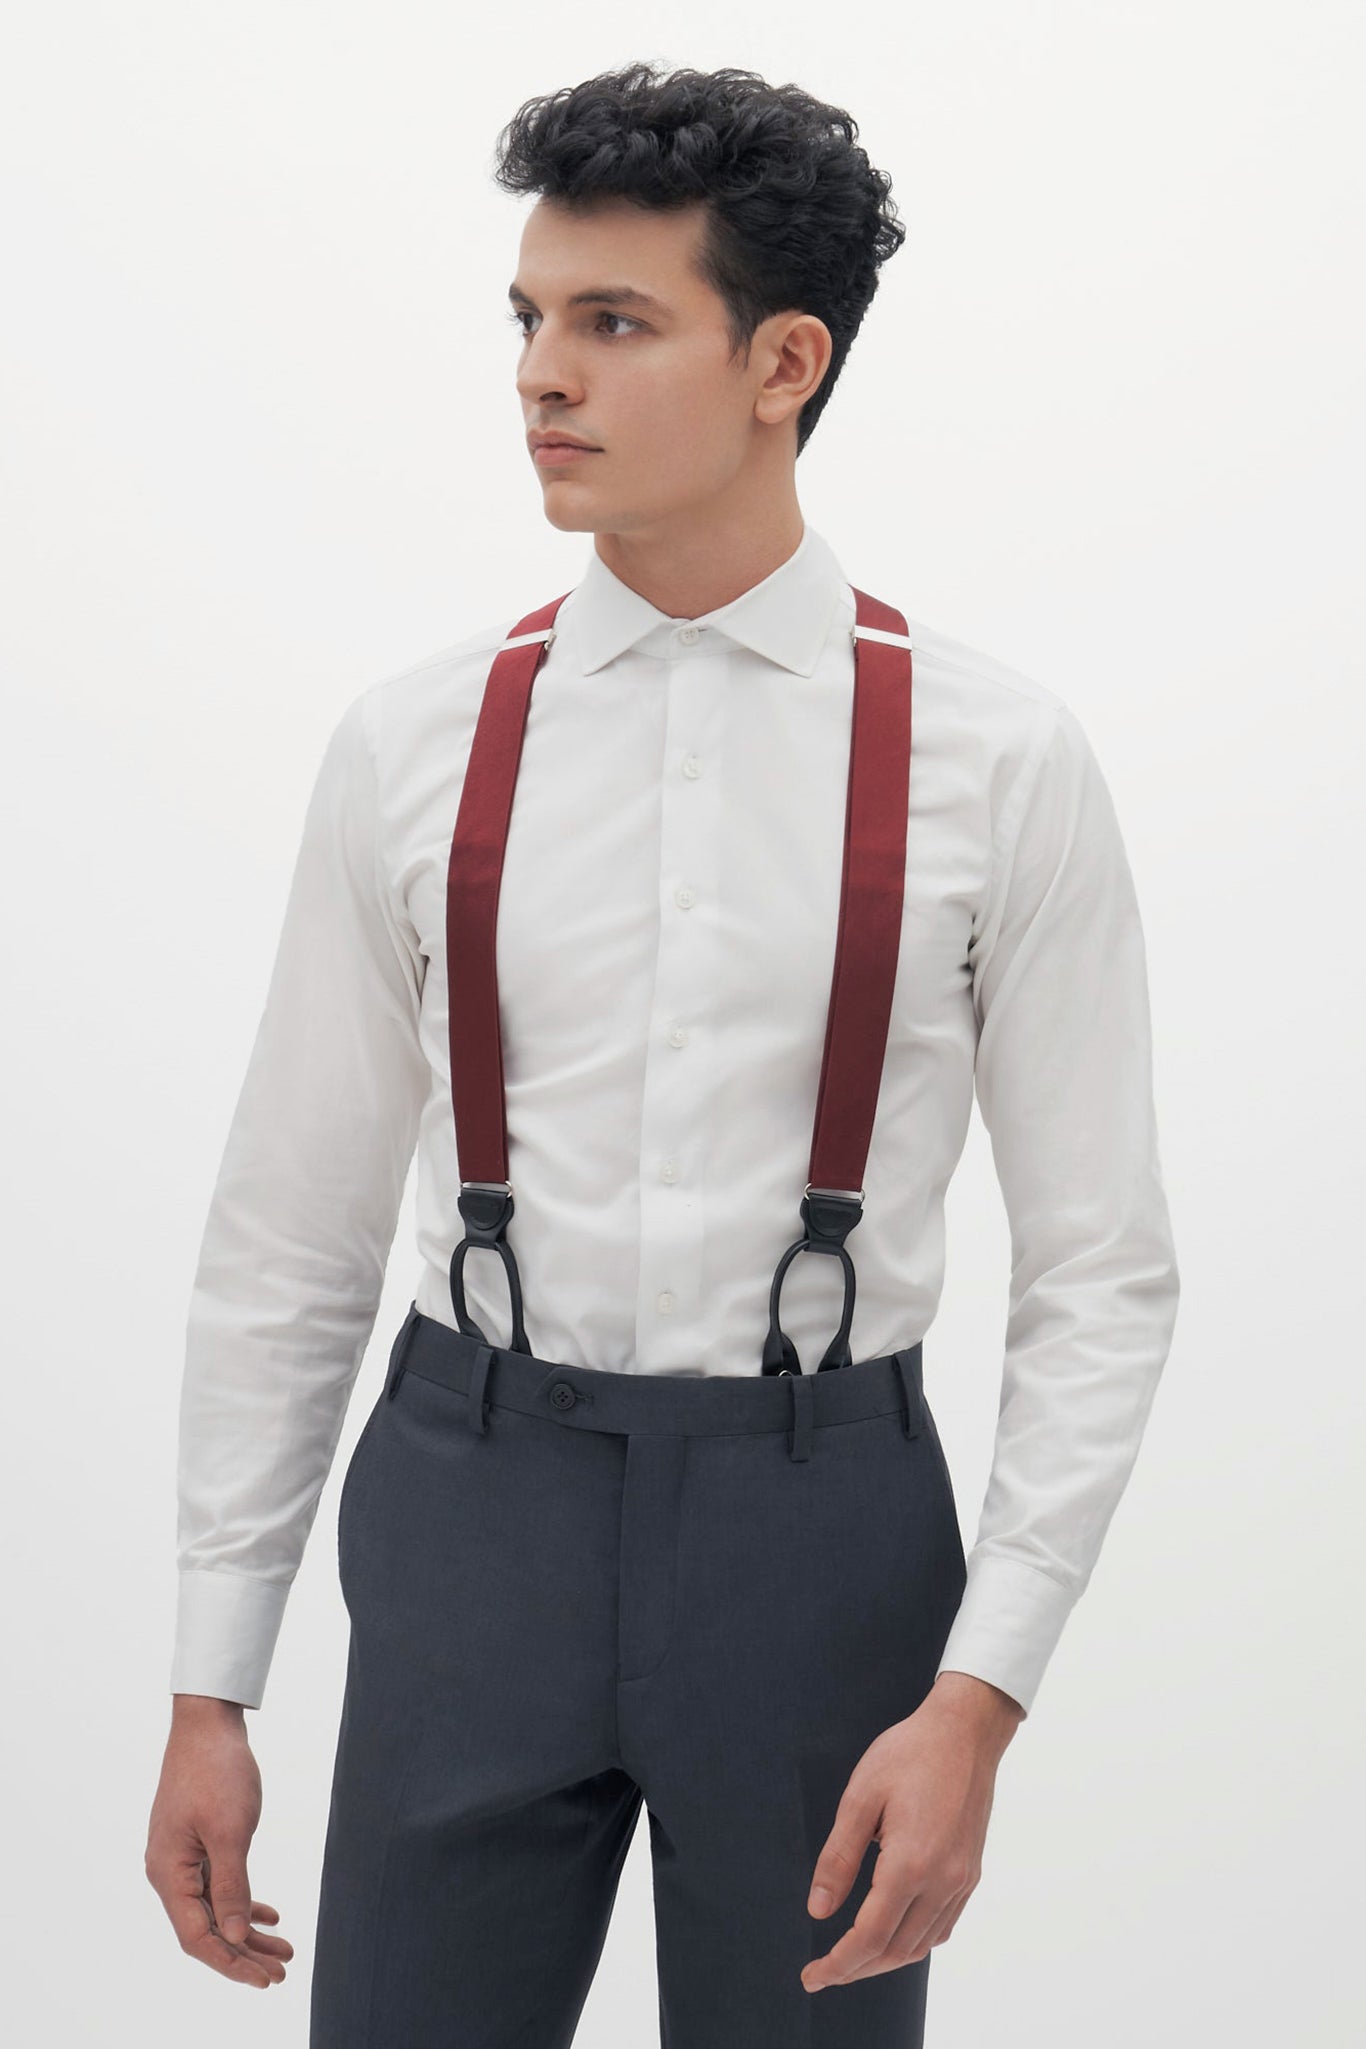 Grosgrain Suspenders By Suitshop - Burgundy